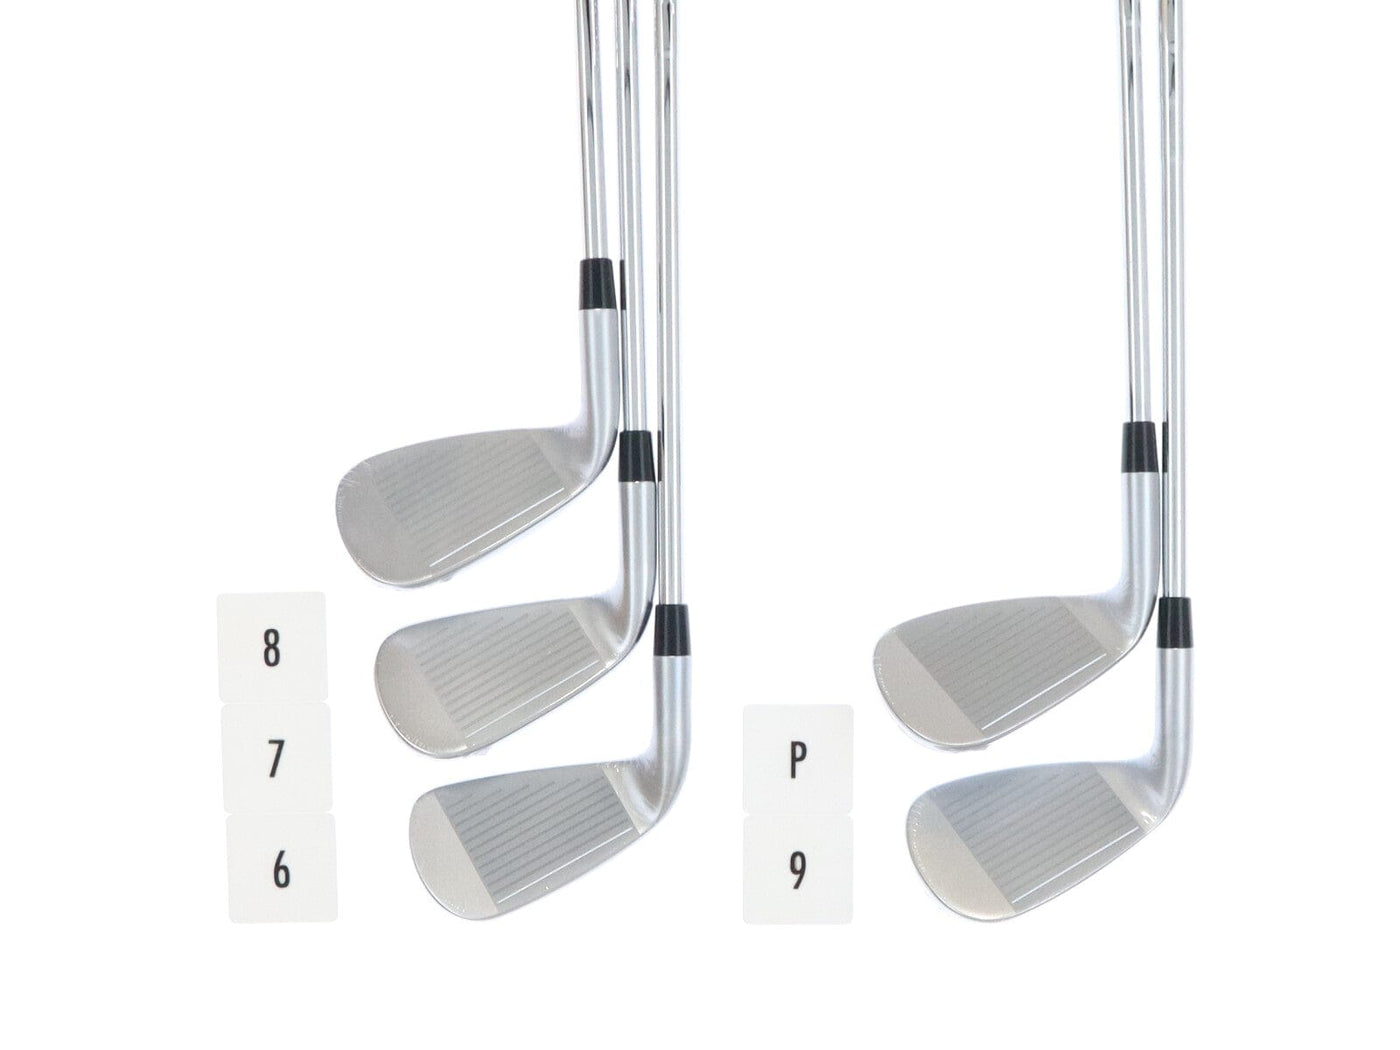 golf partner iron set brand new nexgen ns210 stiff ns pro 850gh neo 5 pieces 2